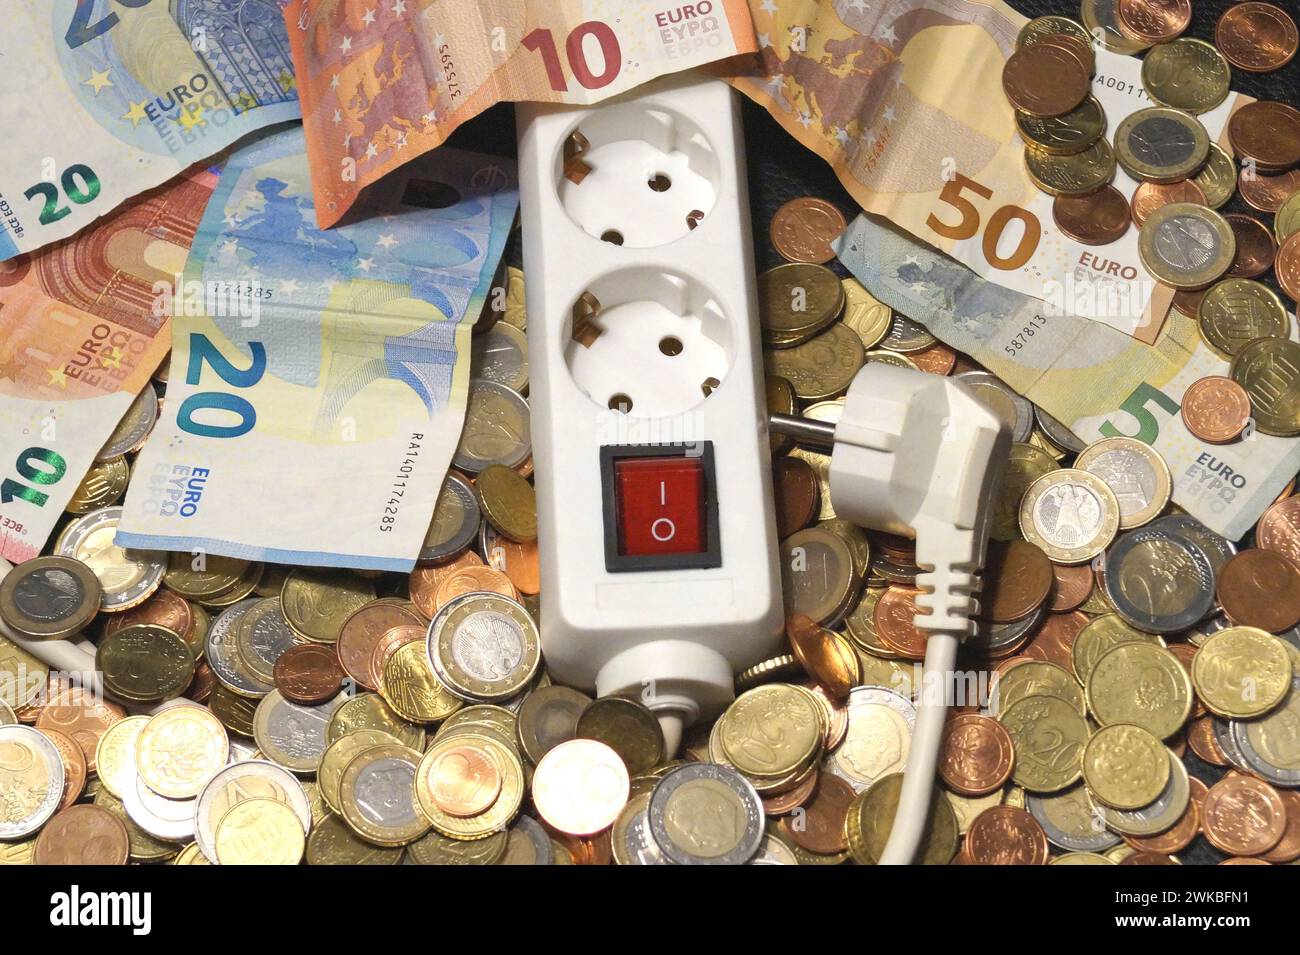 bande de sortie et argent, image symbolique des coûts de l'électricité Banque D'Images